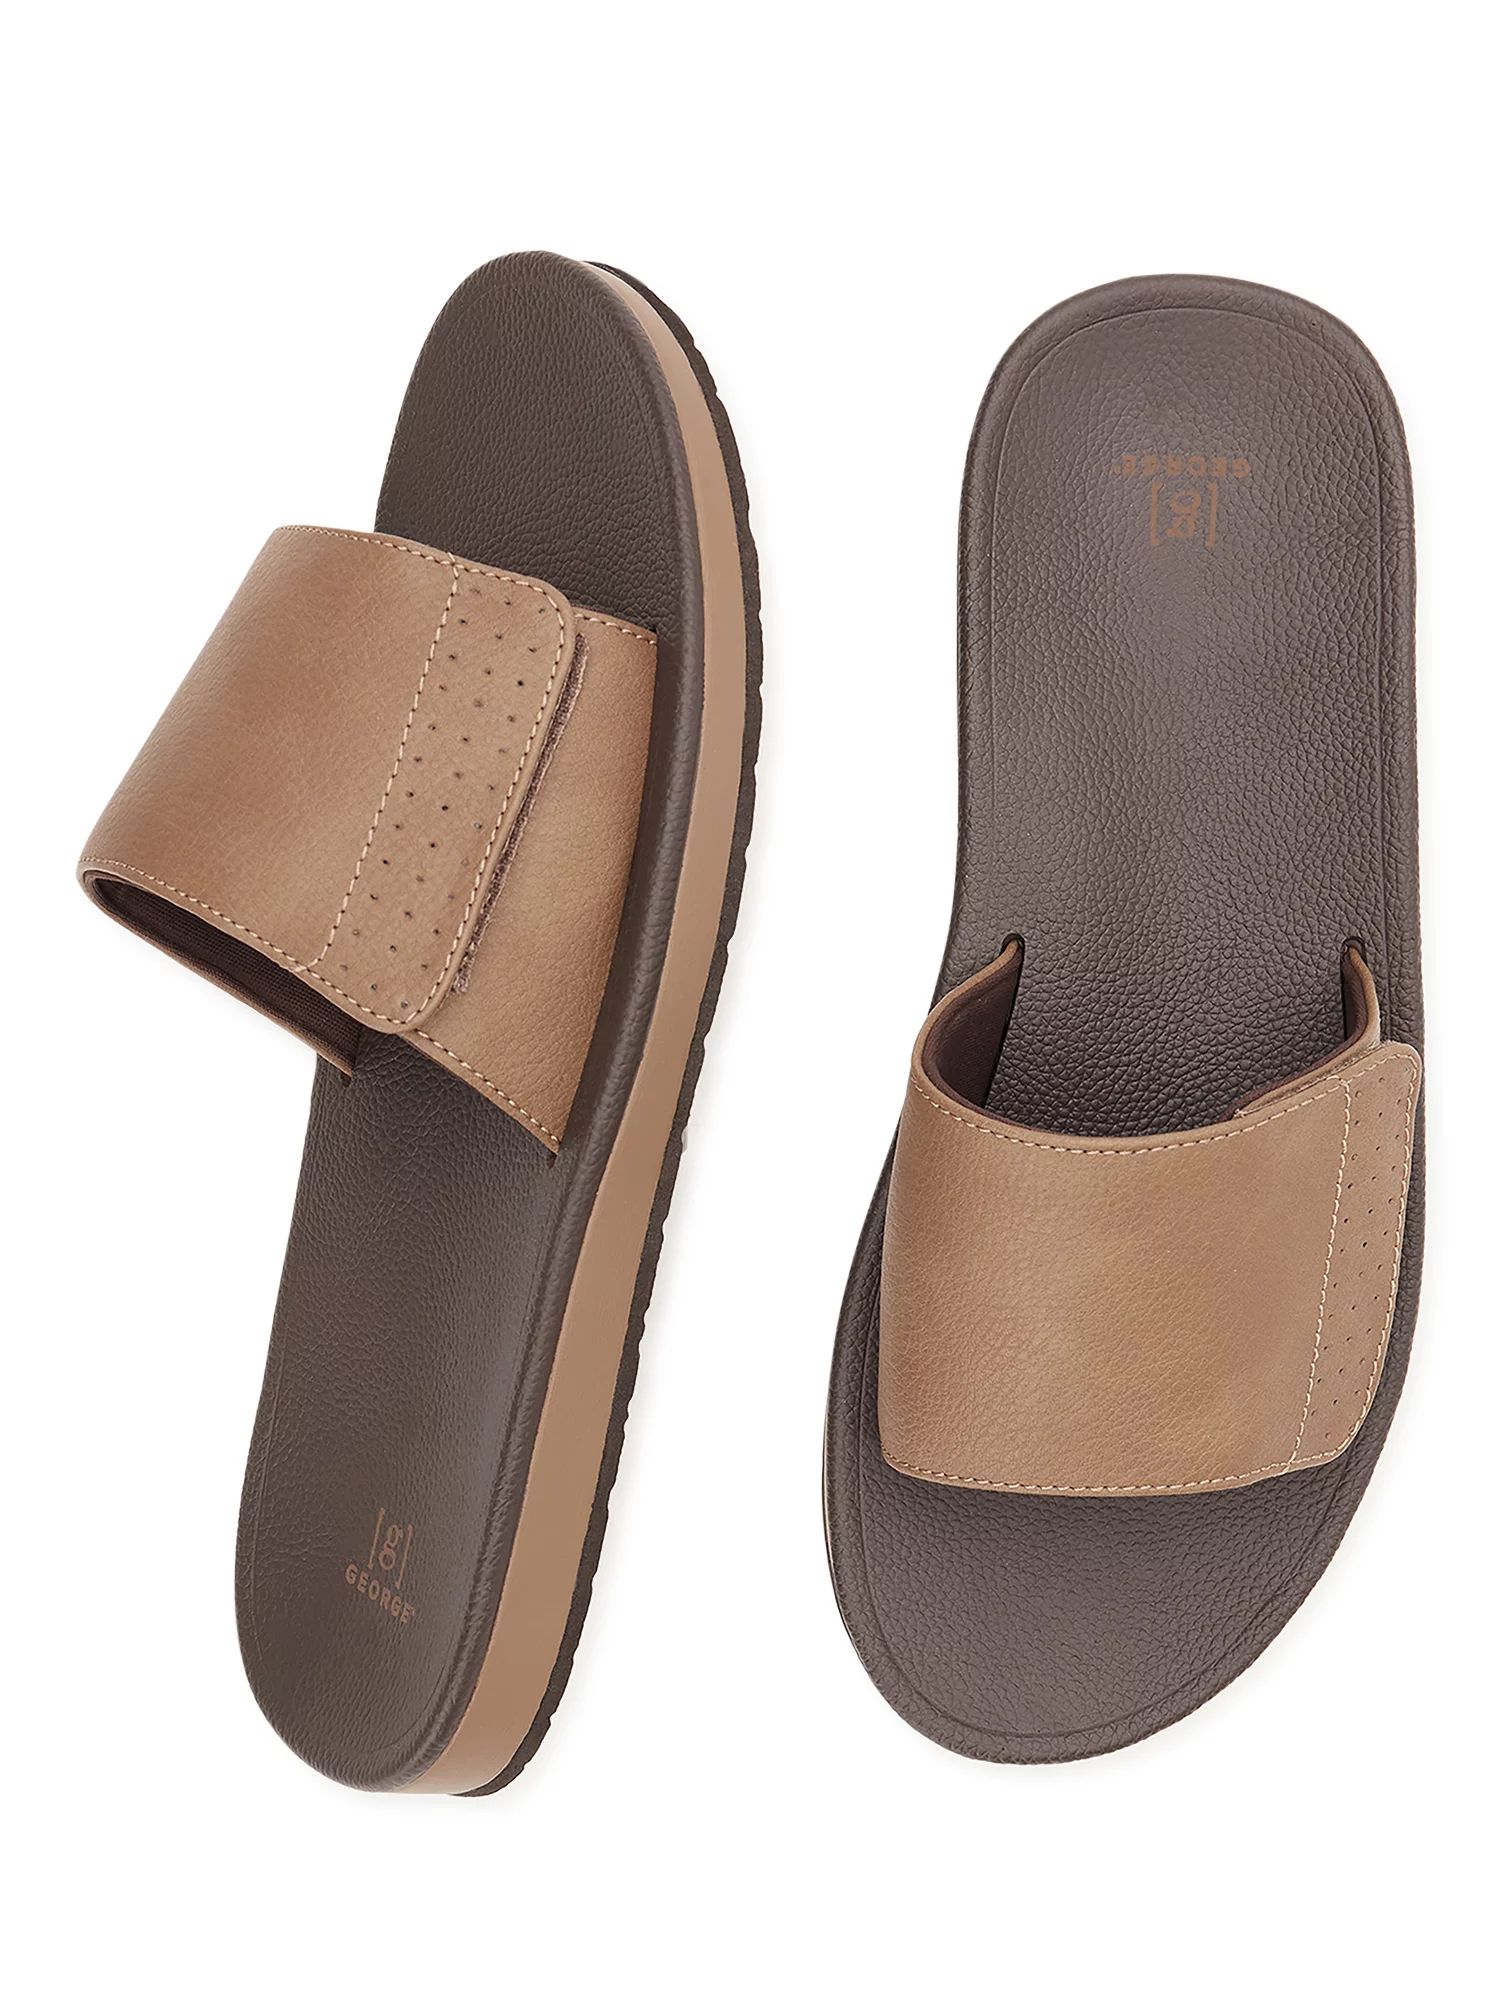 George Men's Comfort Slide Sandals | Walmart (US)